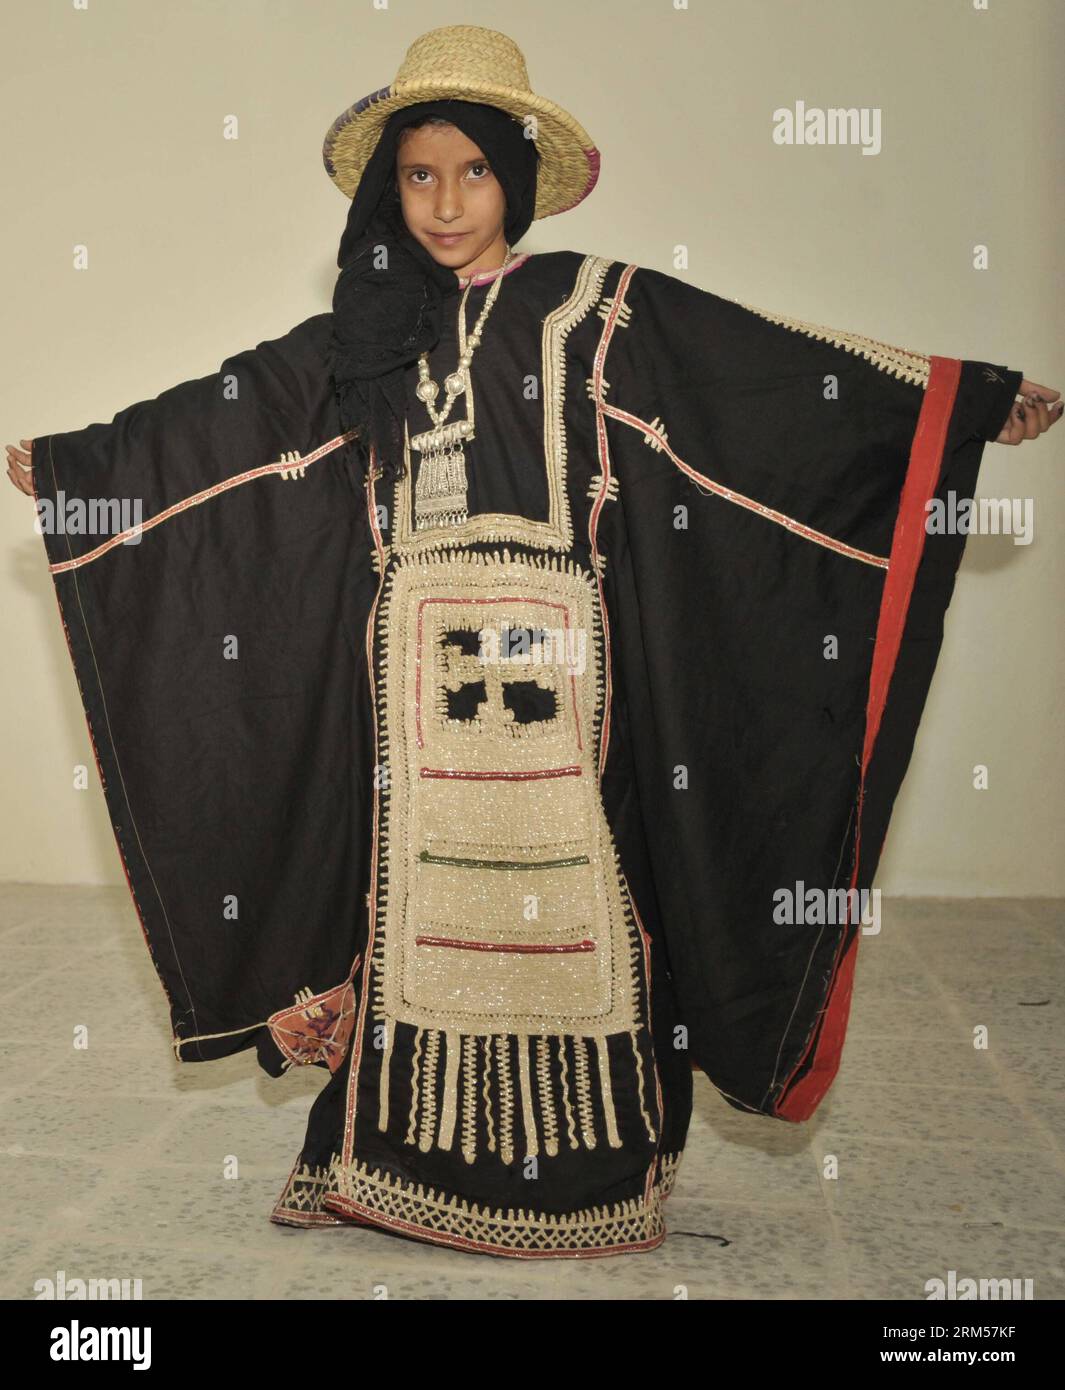 Bildnummer : 60592641 Datum : 12.10.2013 Copyright : imago/Xinhua SANAA, 12 octobre 2013 (Xinhua) -- Une jeune fille yéménite présente un costume traditionnel lors d'un défilé de mode à Sanaa, Yémen, le 12 octobre 2013. Le spectacle en salle, organisé par une organisation sociale pour le développement des femmes, cherche à récupérer l industrie touristique durement touchée par les troubles. Cependant, au Yémen, un pays profondément religieux et conservateur, il est impossible pour les femmes de faire un défilé de mode sur scène. Les organisateurs ont donc laissé les filles porter des clothers traditionnels pendant le spectacle devant les médias afin de présenter la culture yéménite au monde. (X Banque D'Images